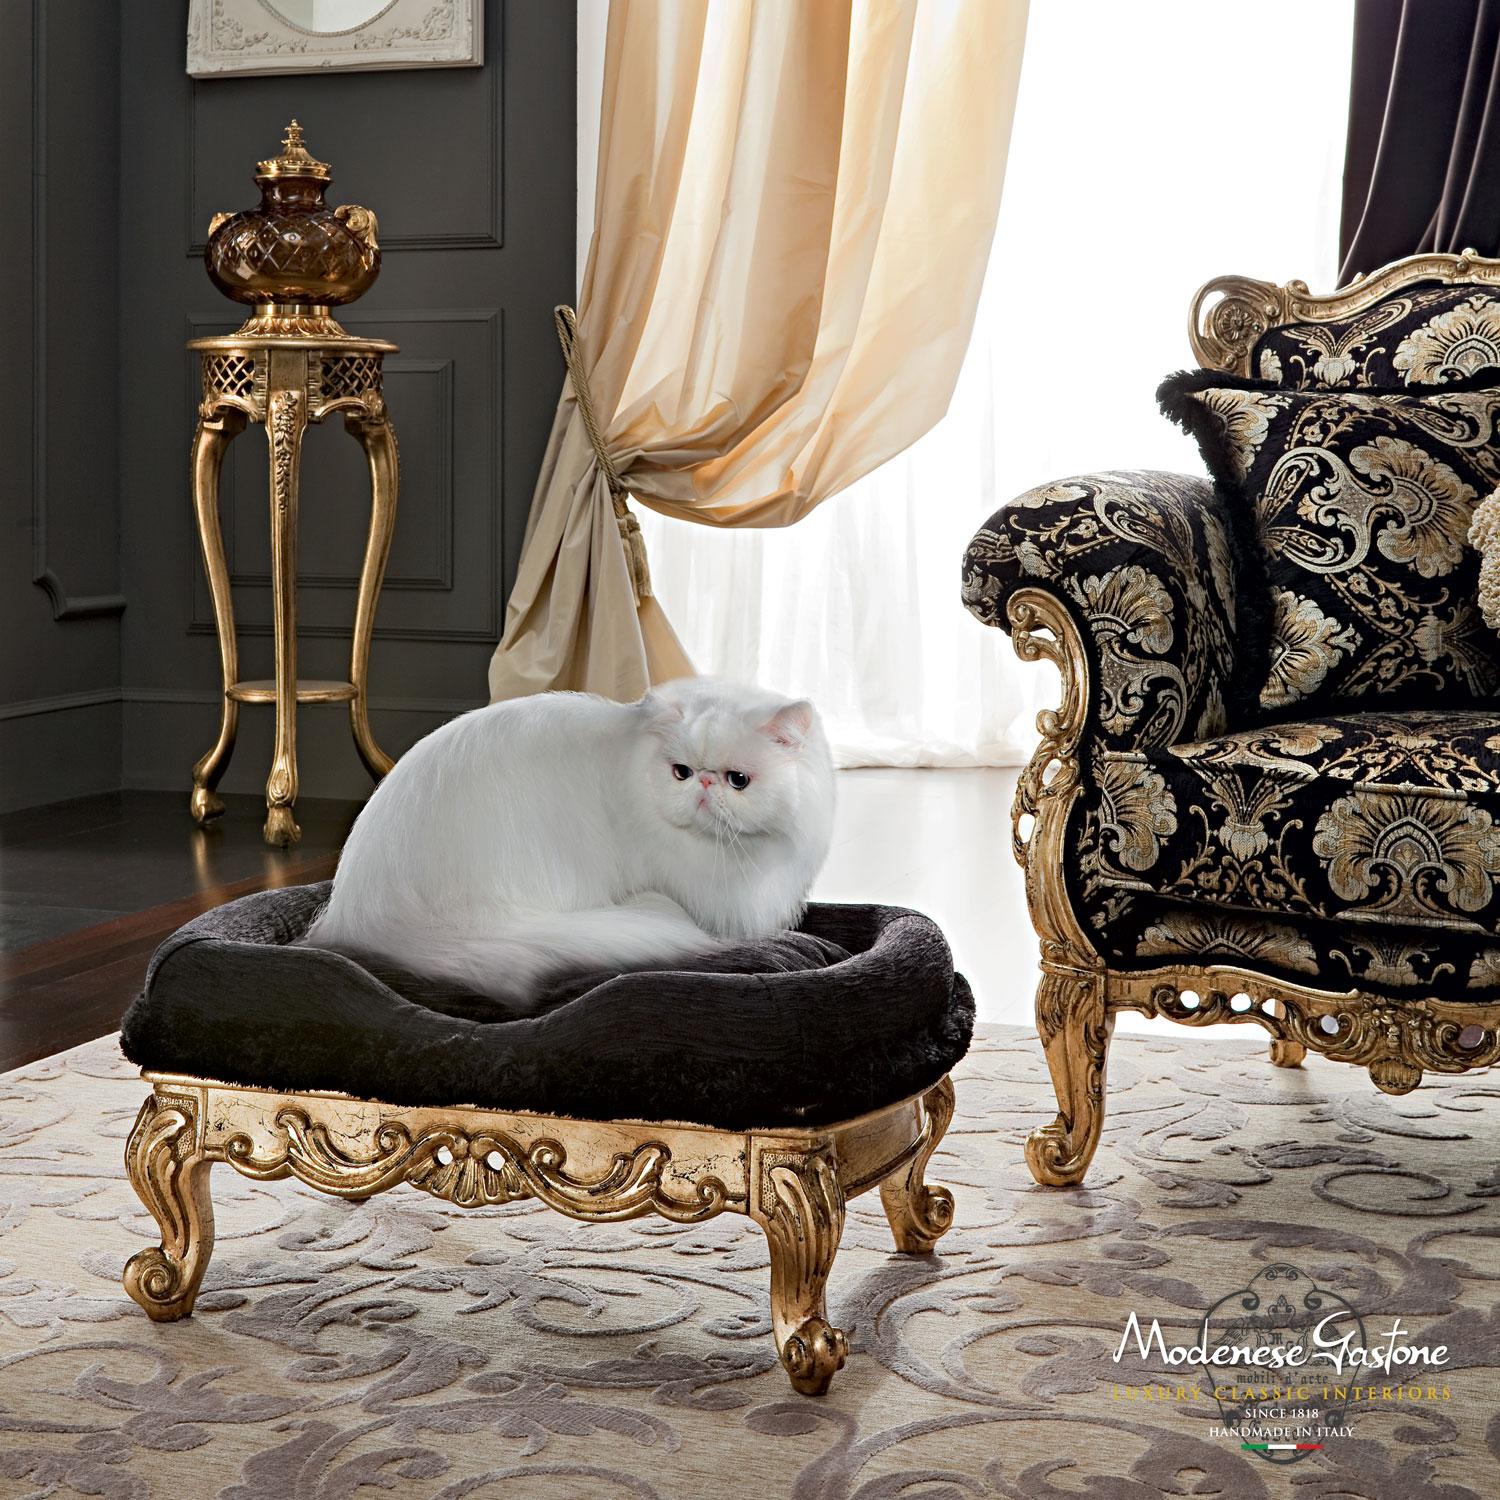 Dieses verführerische Sofa empfängt die Gäste mit seinem breiten Format und dem extravaganten Design. Dieser Viersitzer mit Armlehne im klassischen Barockstil. Der Sofakorpus mit exklusivem Polsterdesign sitzt auf dem goldenen Sockel mit